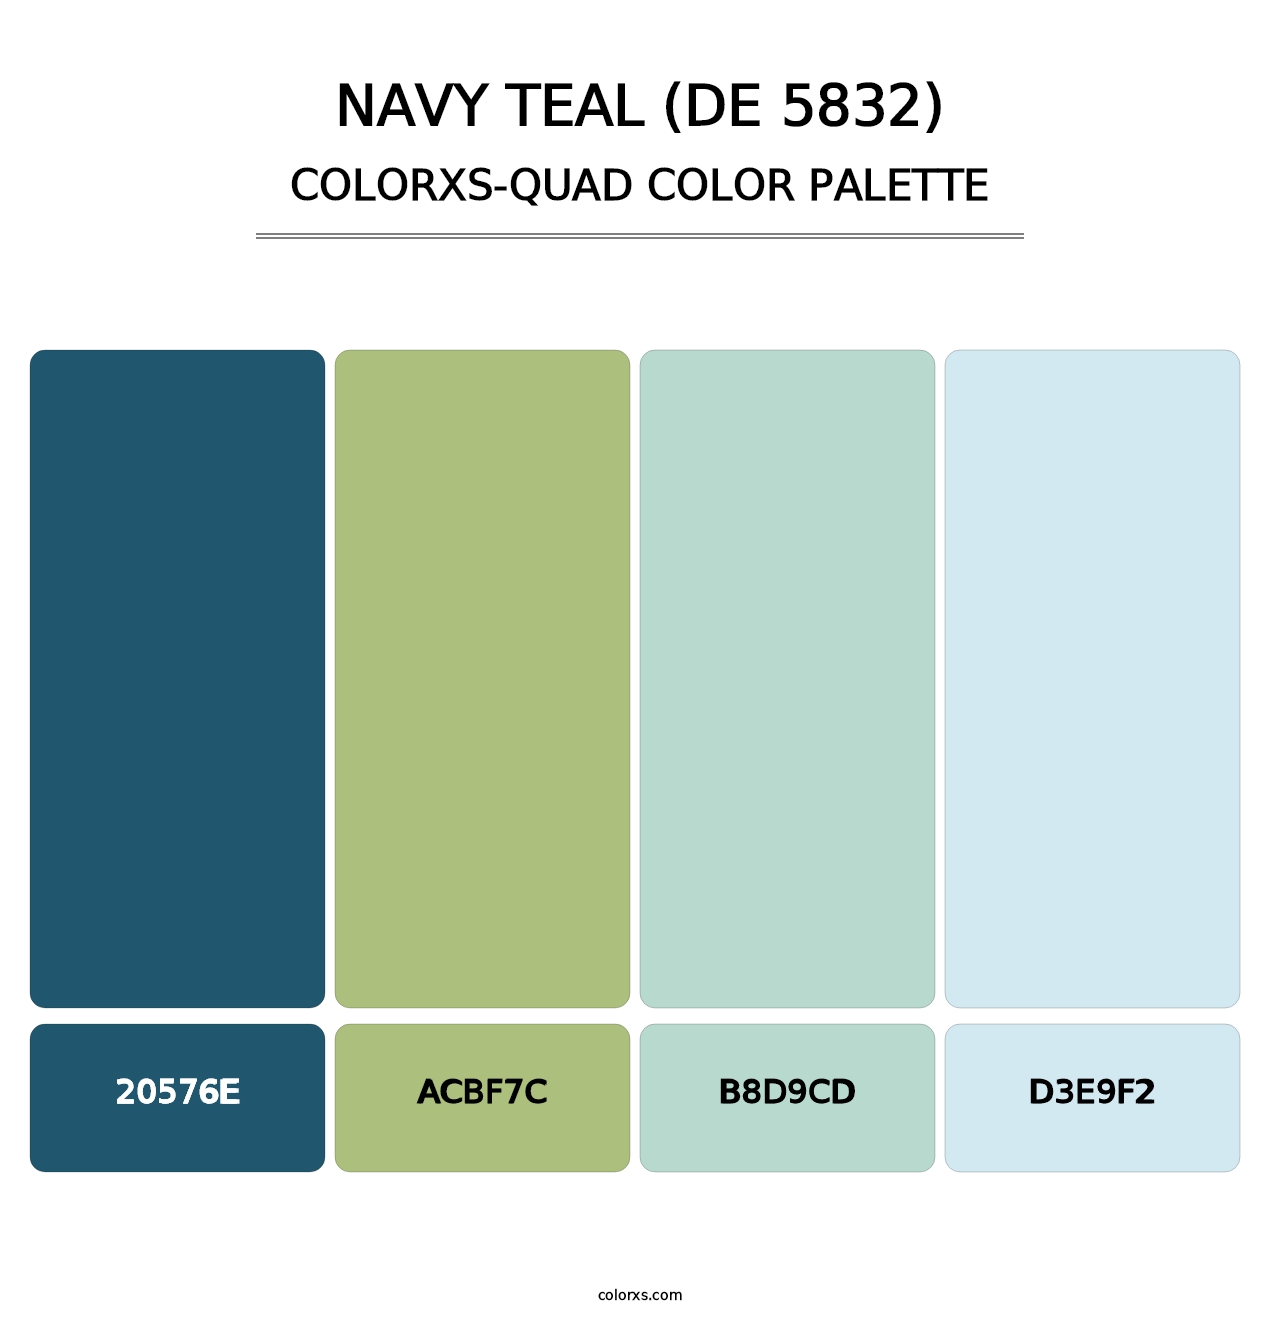 Navy Teal (DE 5832) - Colorxs Quad Palette